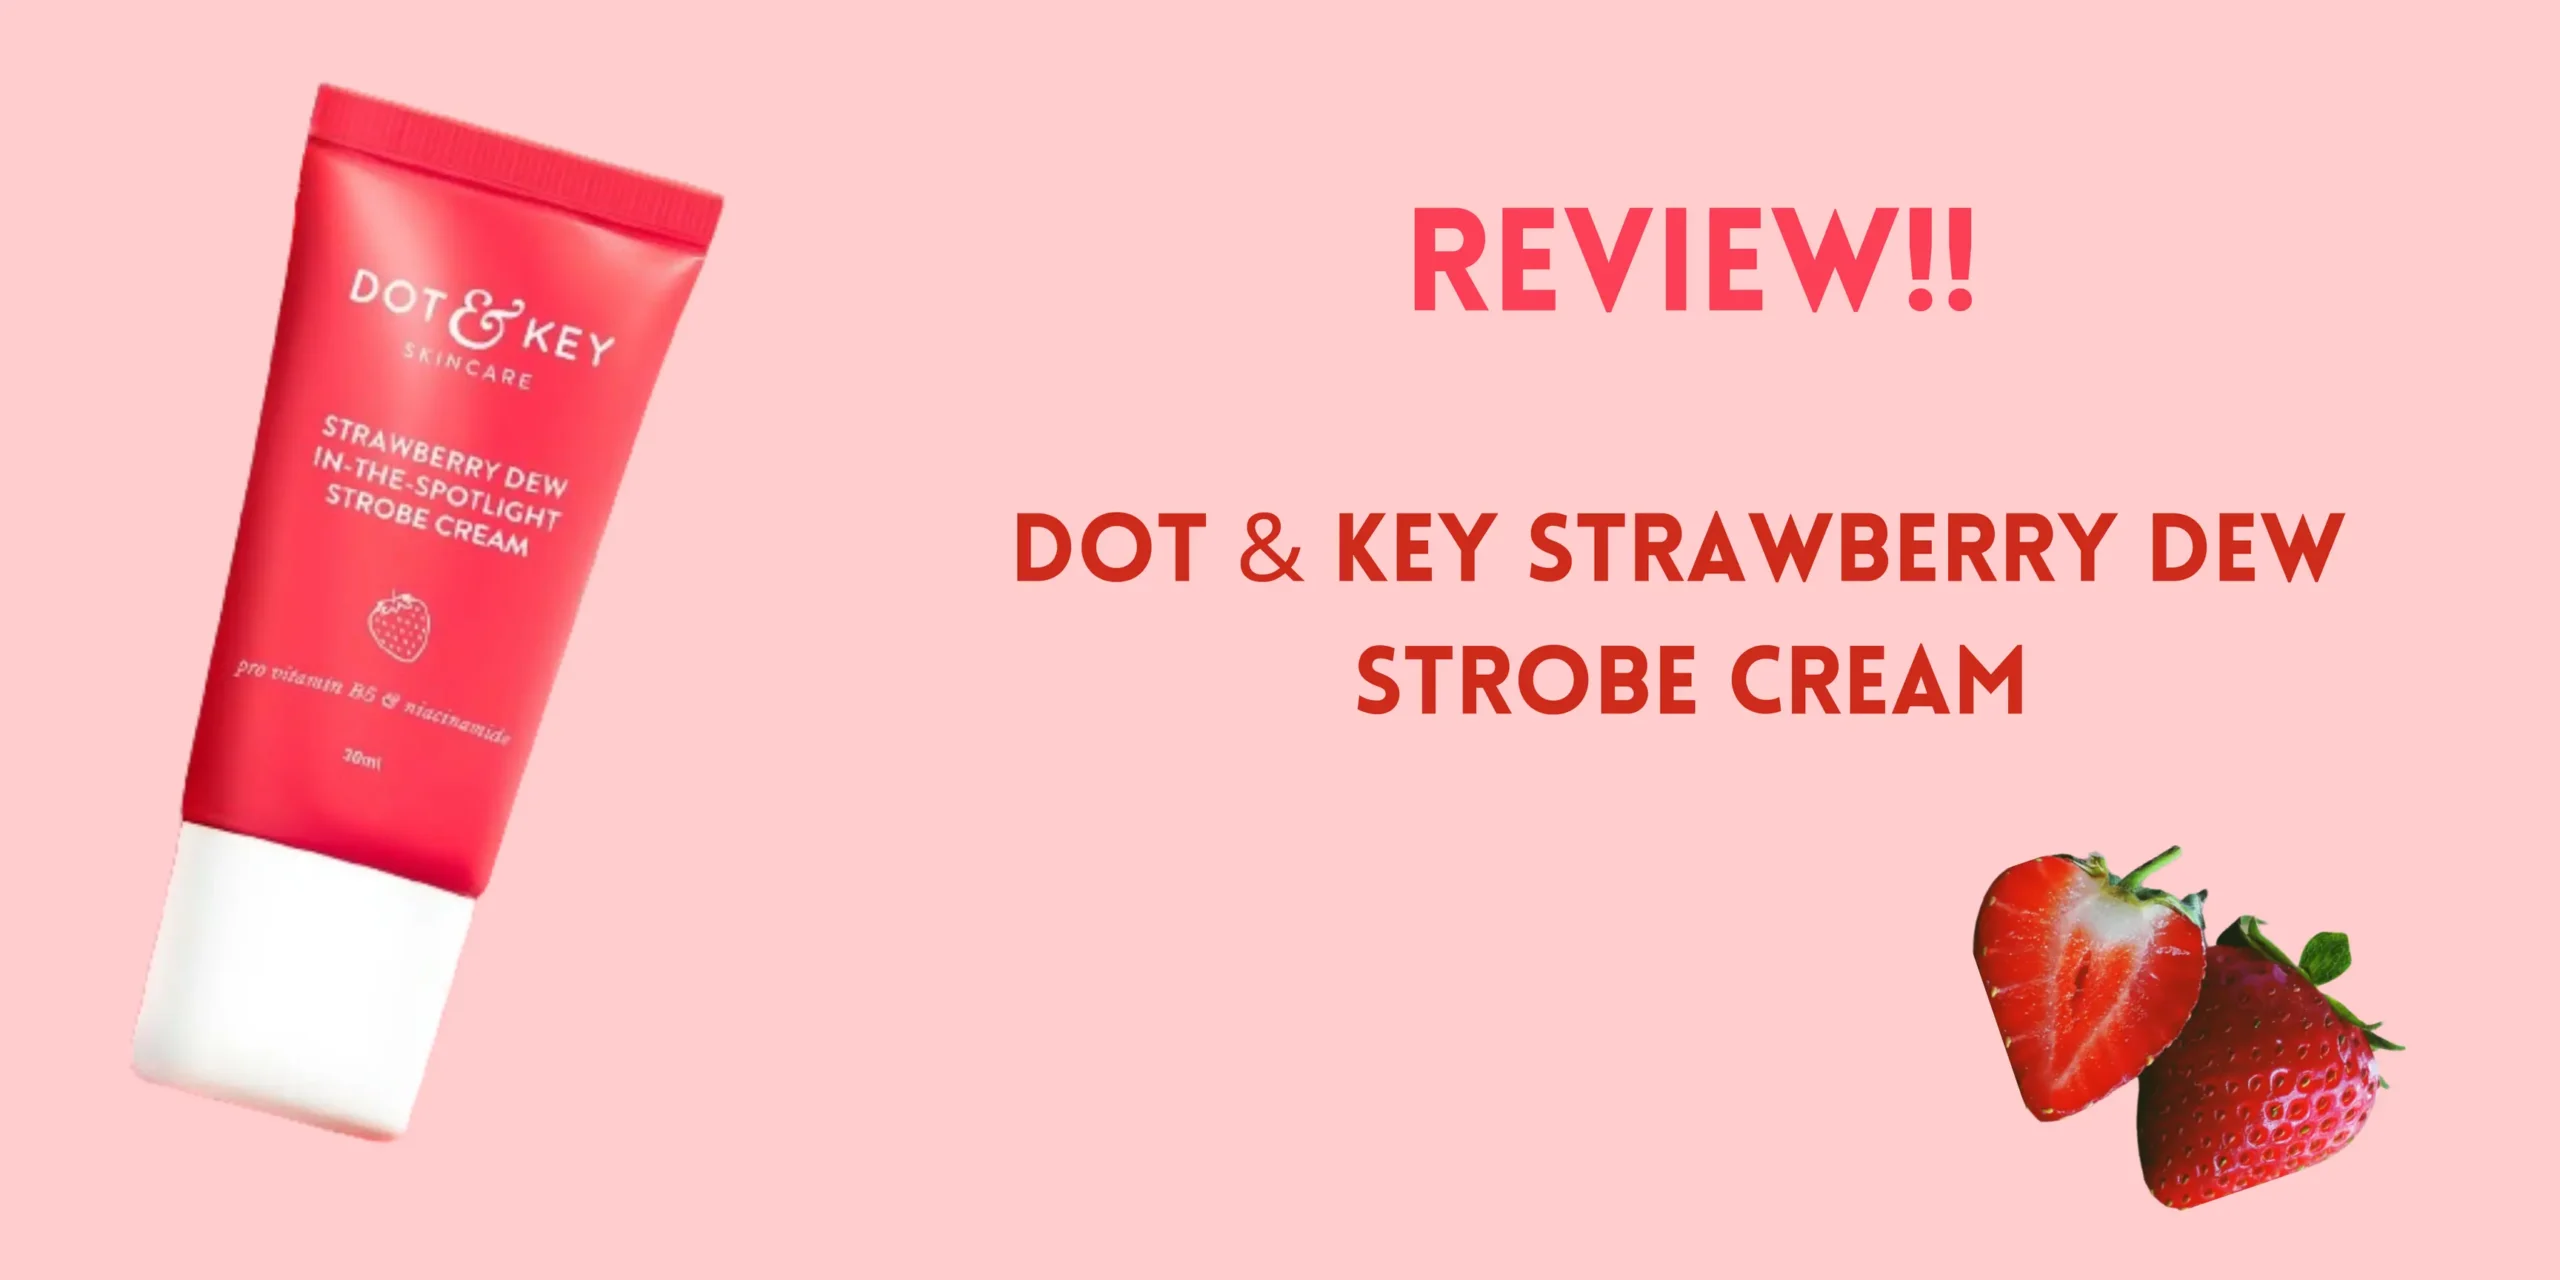 Dot & Key Strawberry Dew Strobe Cream Review